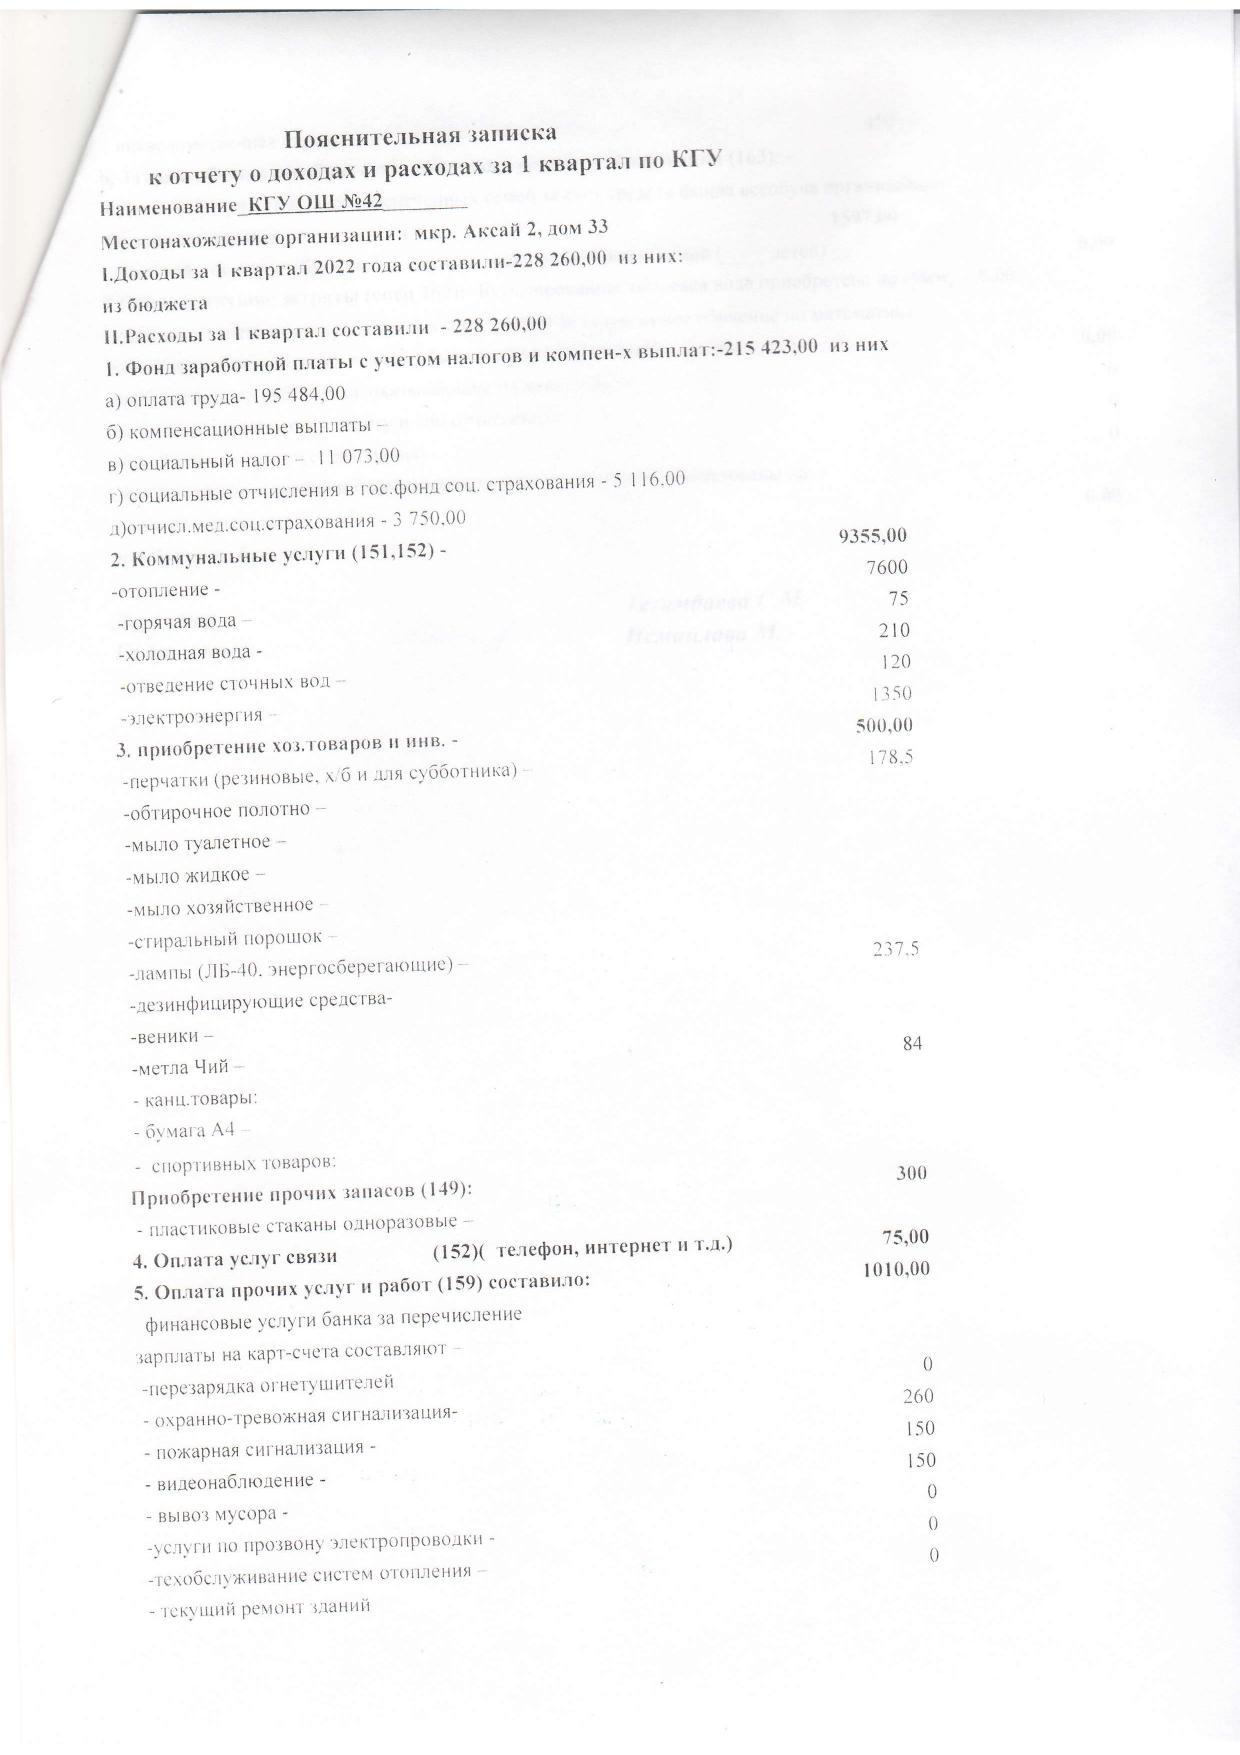 Пояснительная записка к отчету о доходах и расходах за 1 квартал 2022 года